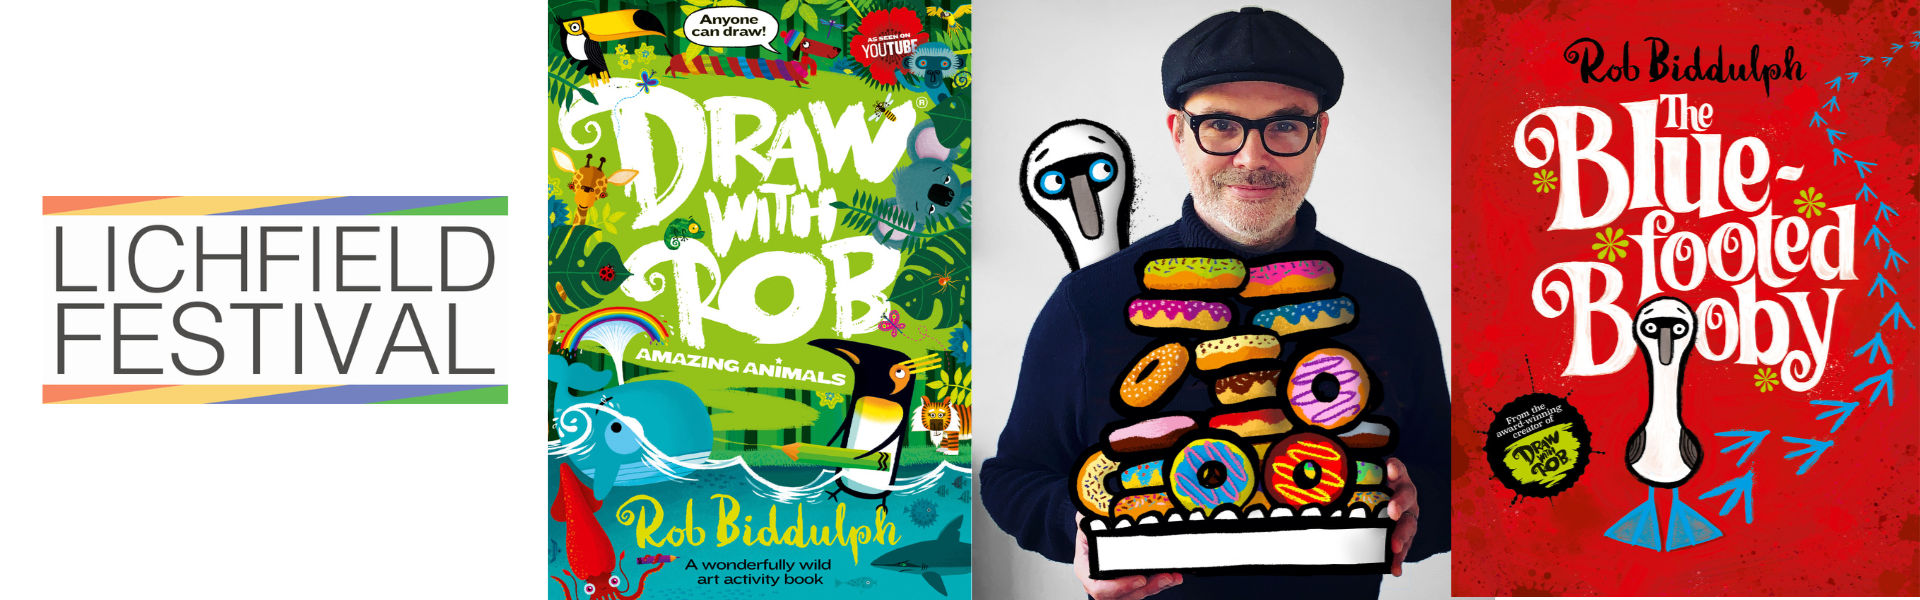 Rob Biddulph - Draw with Rob (Lichfield Festival)